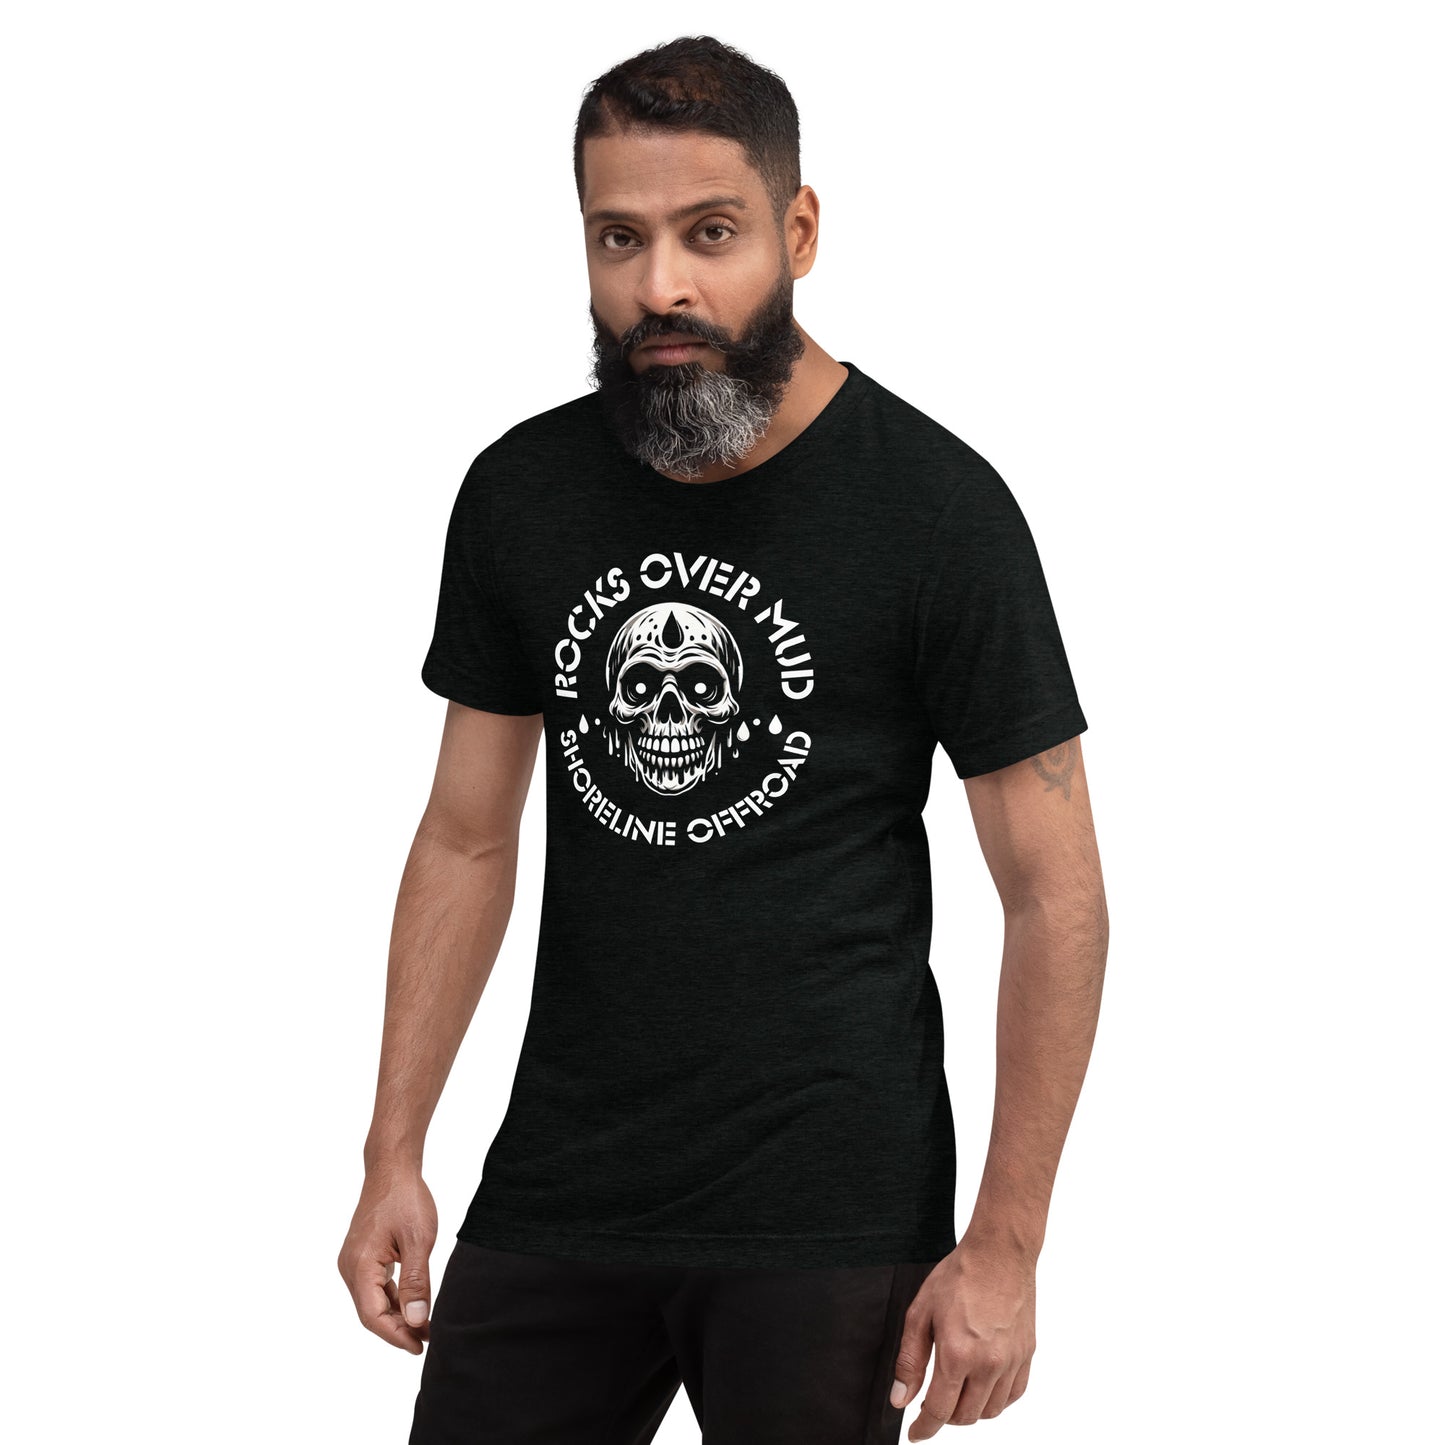 a man with a beard wearing a black shirt